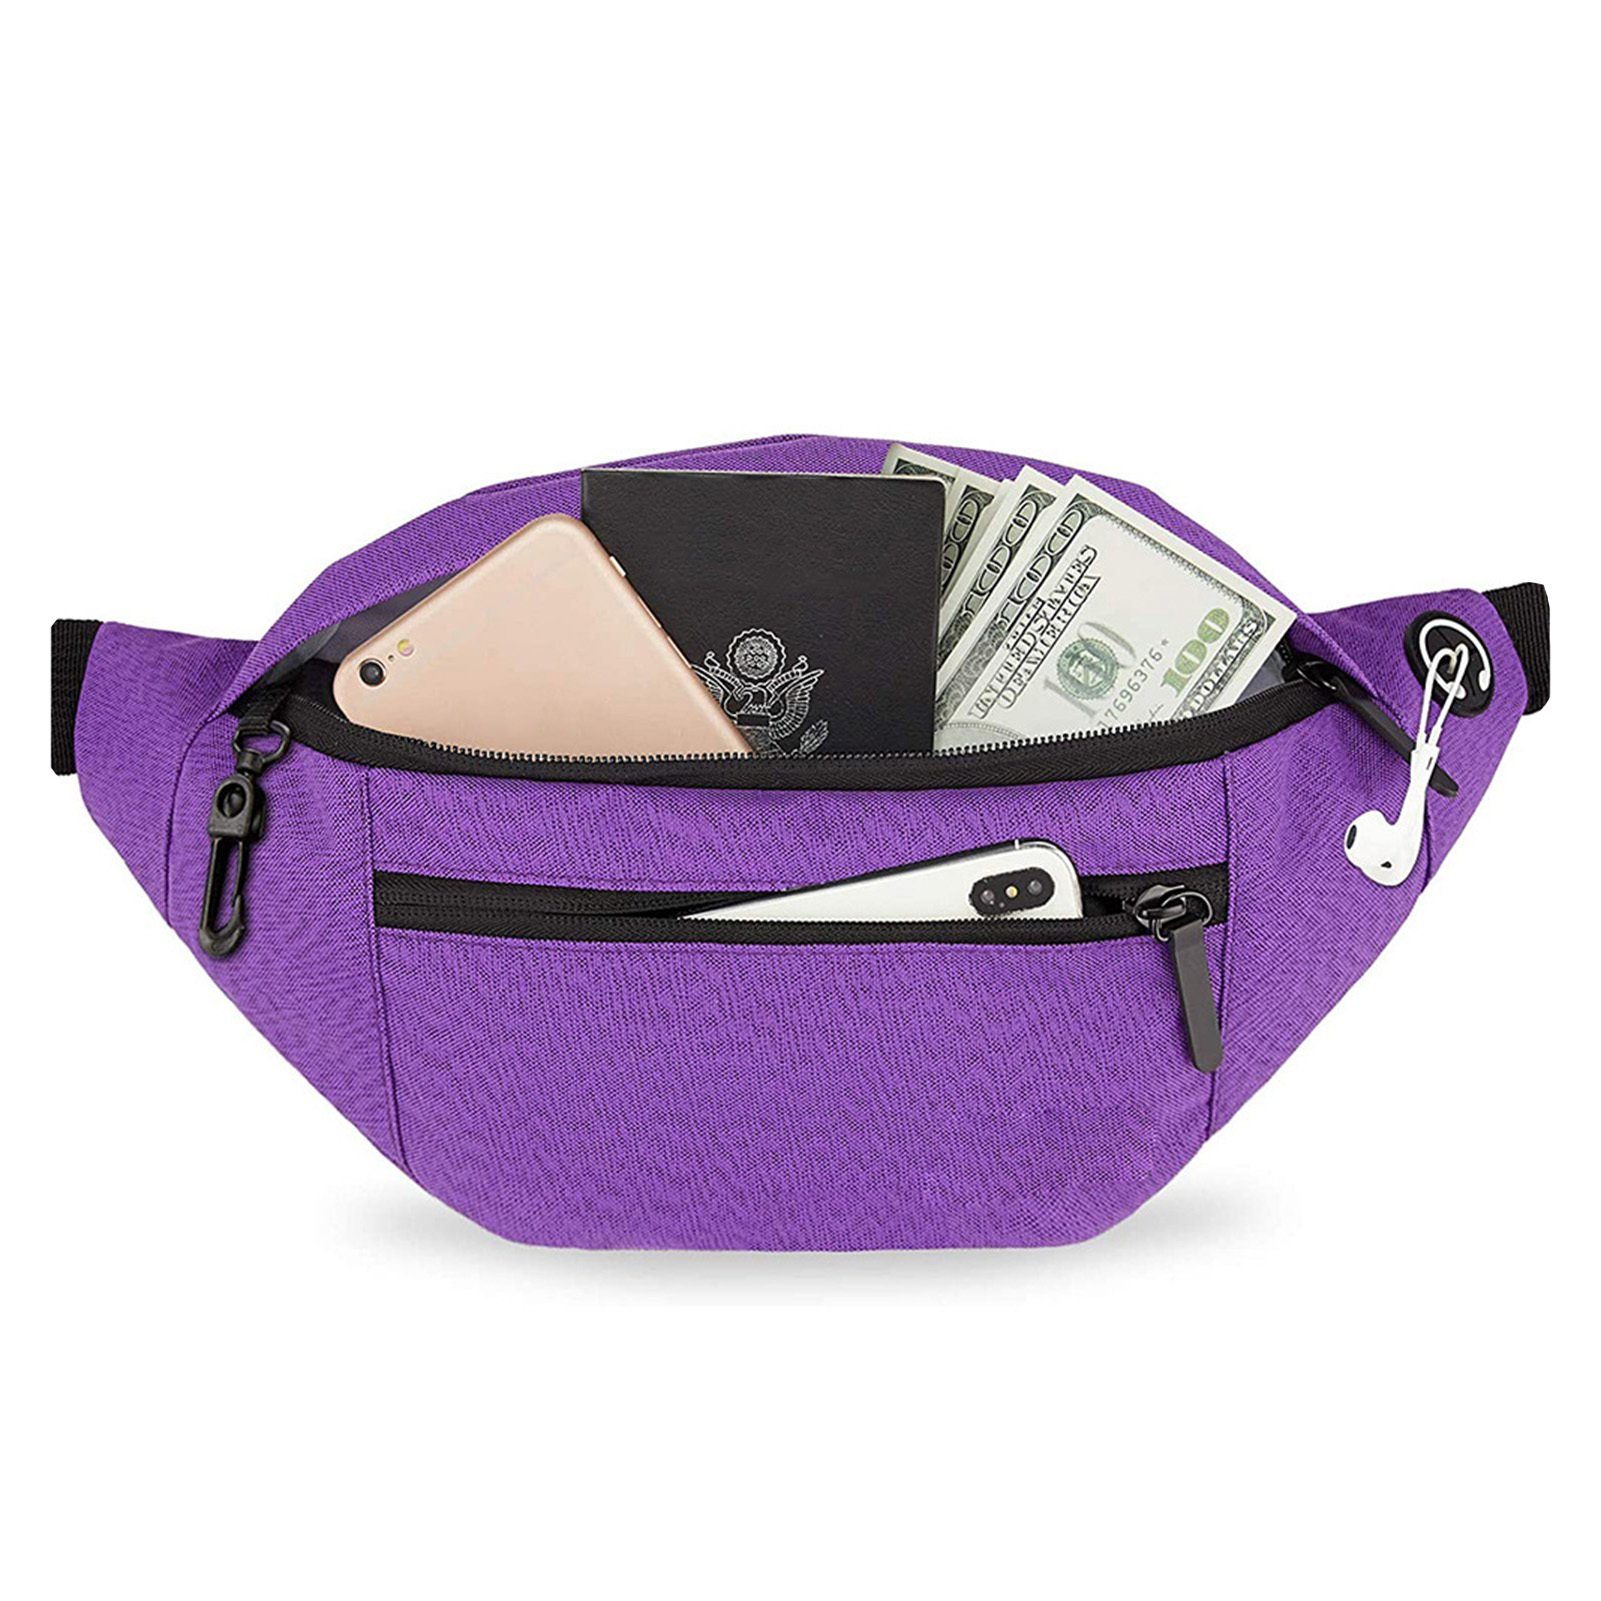 Bag,Brusttasche, purple Blusmart Umhängetasche,Tragbare Crossbody Schultertasche Umhängetasche Große